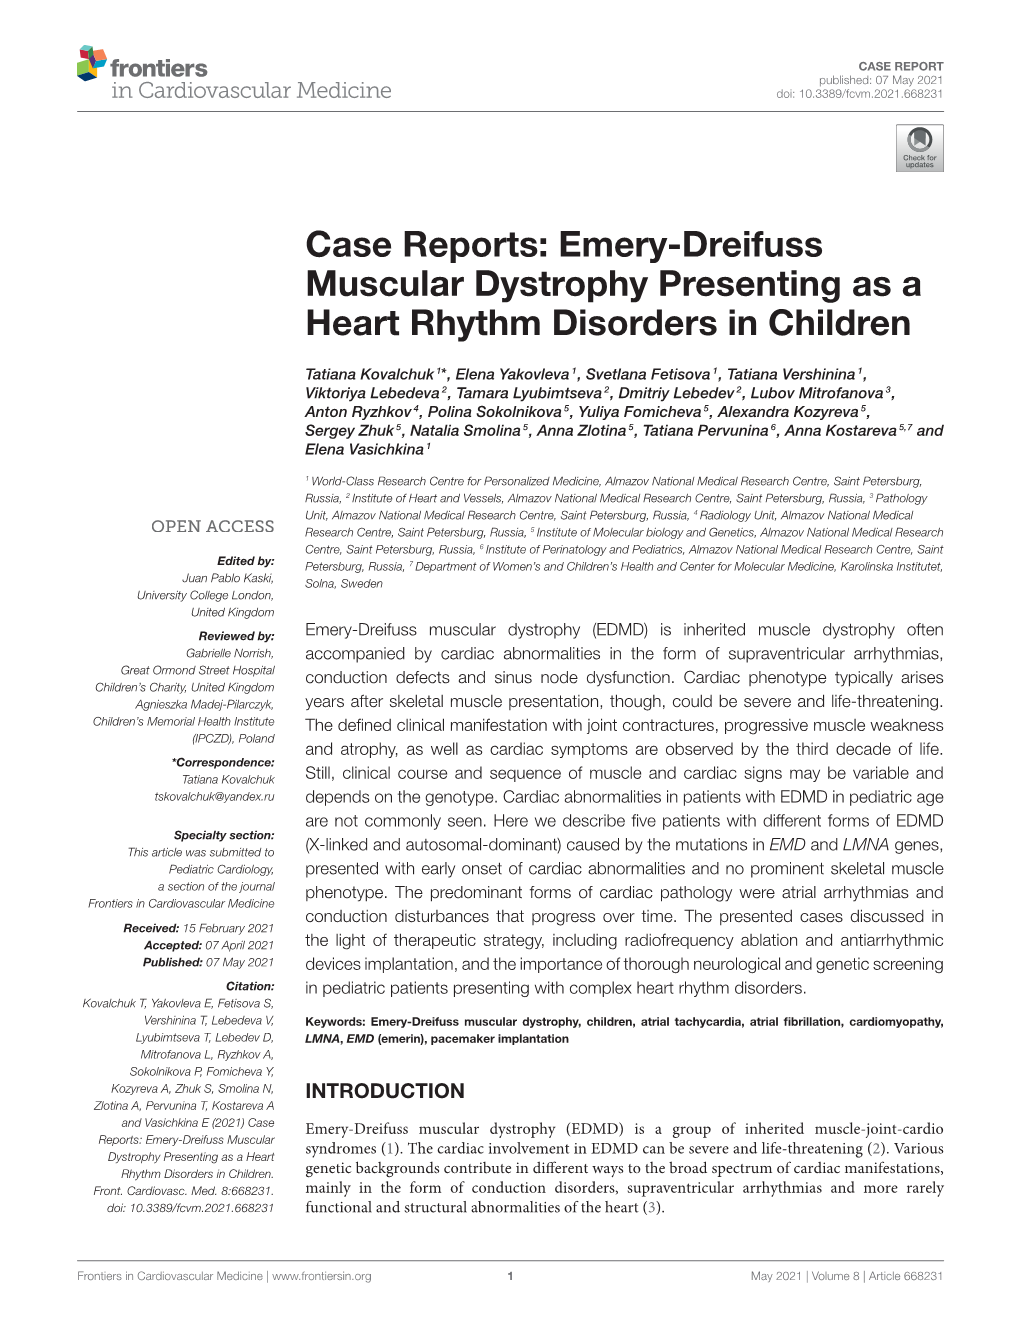 Emery-Dreifuss Muscular Dystrophy Presenting As a Heart Rhythm Disorders in Children